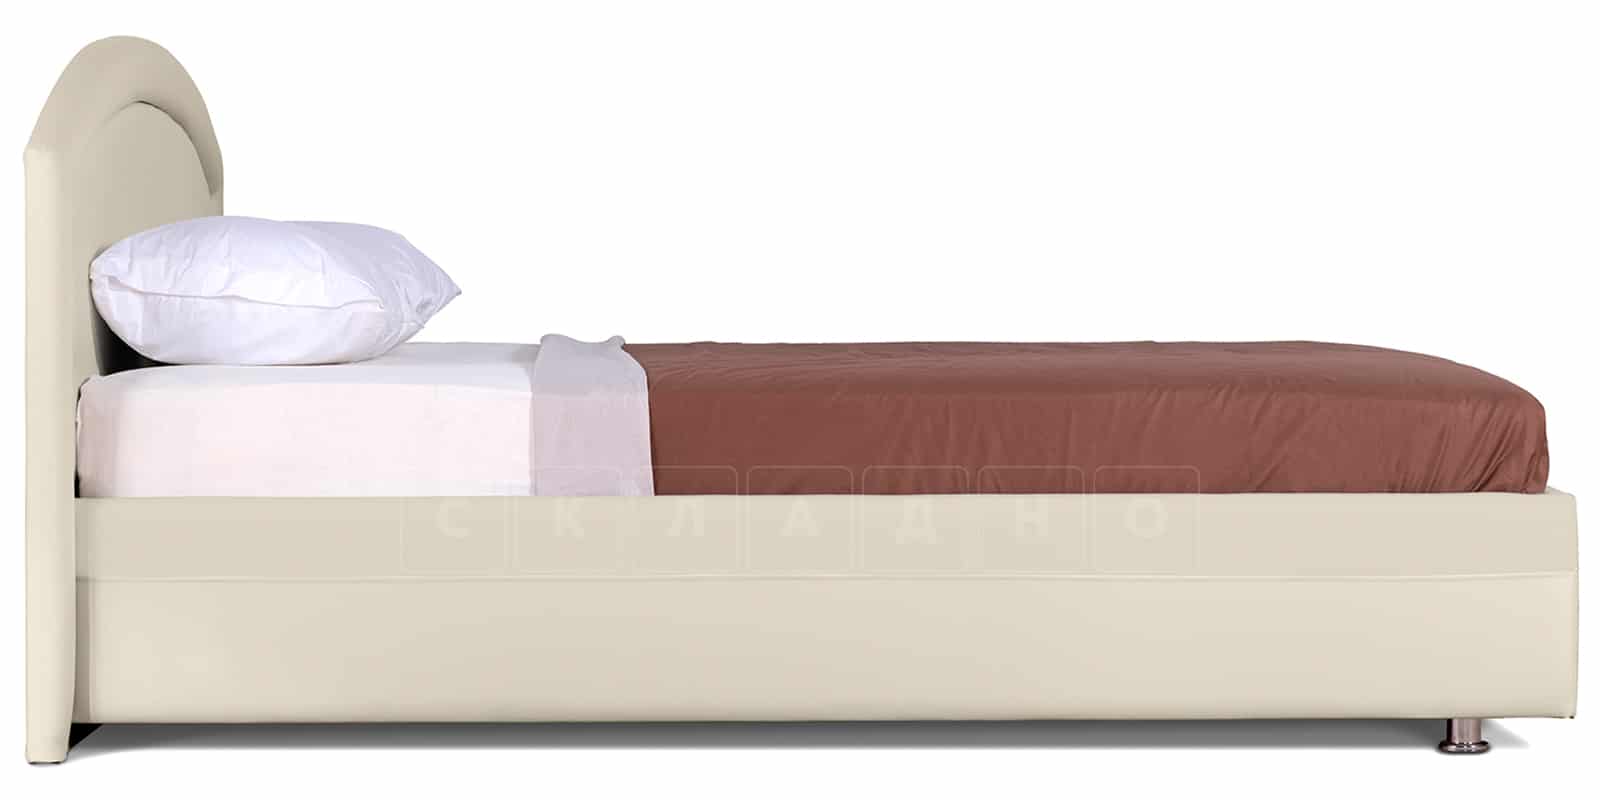 Мягкая кровать Малибу 160 см экокожа бежевый вариант 8-2 фото 4 | интернет-магазин Складно